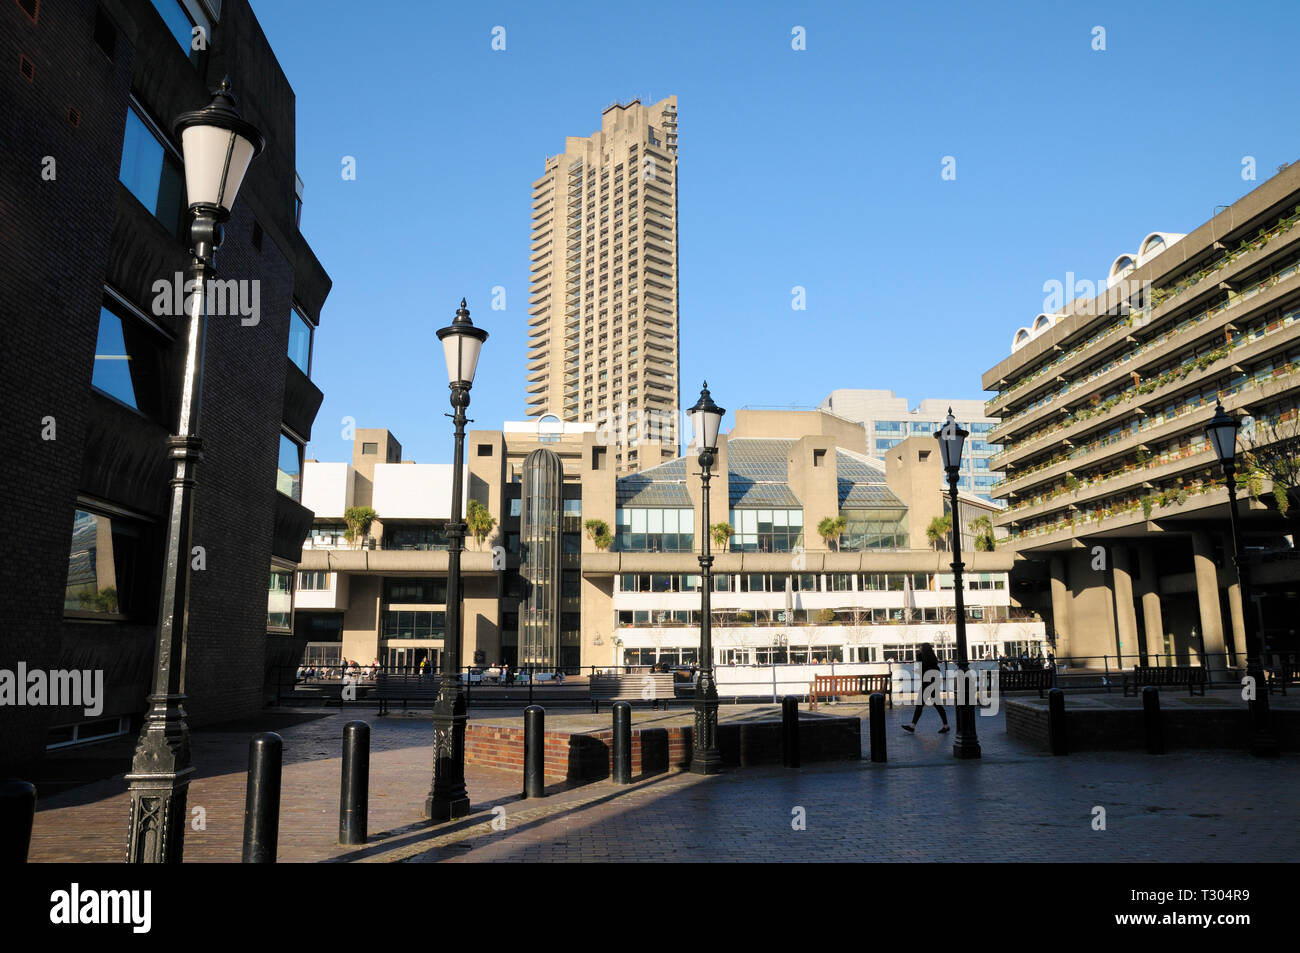 Le Barbican Centre et tour Cromwell sur le Barbican Estate, City of London, England, UK Banque D'Images